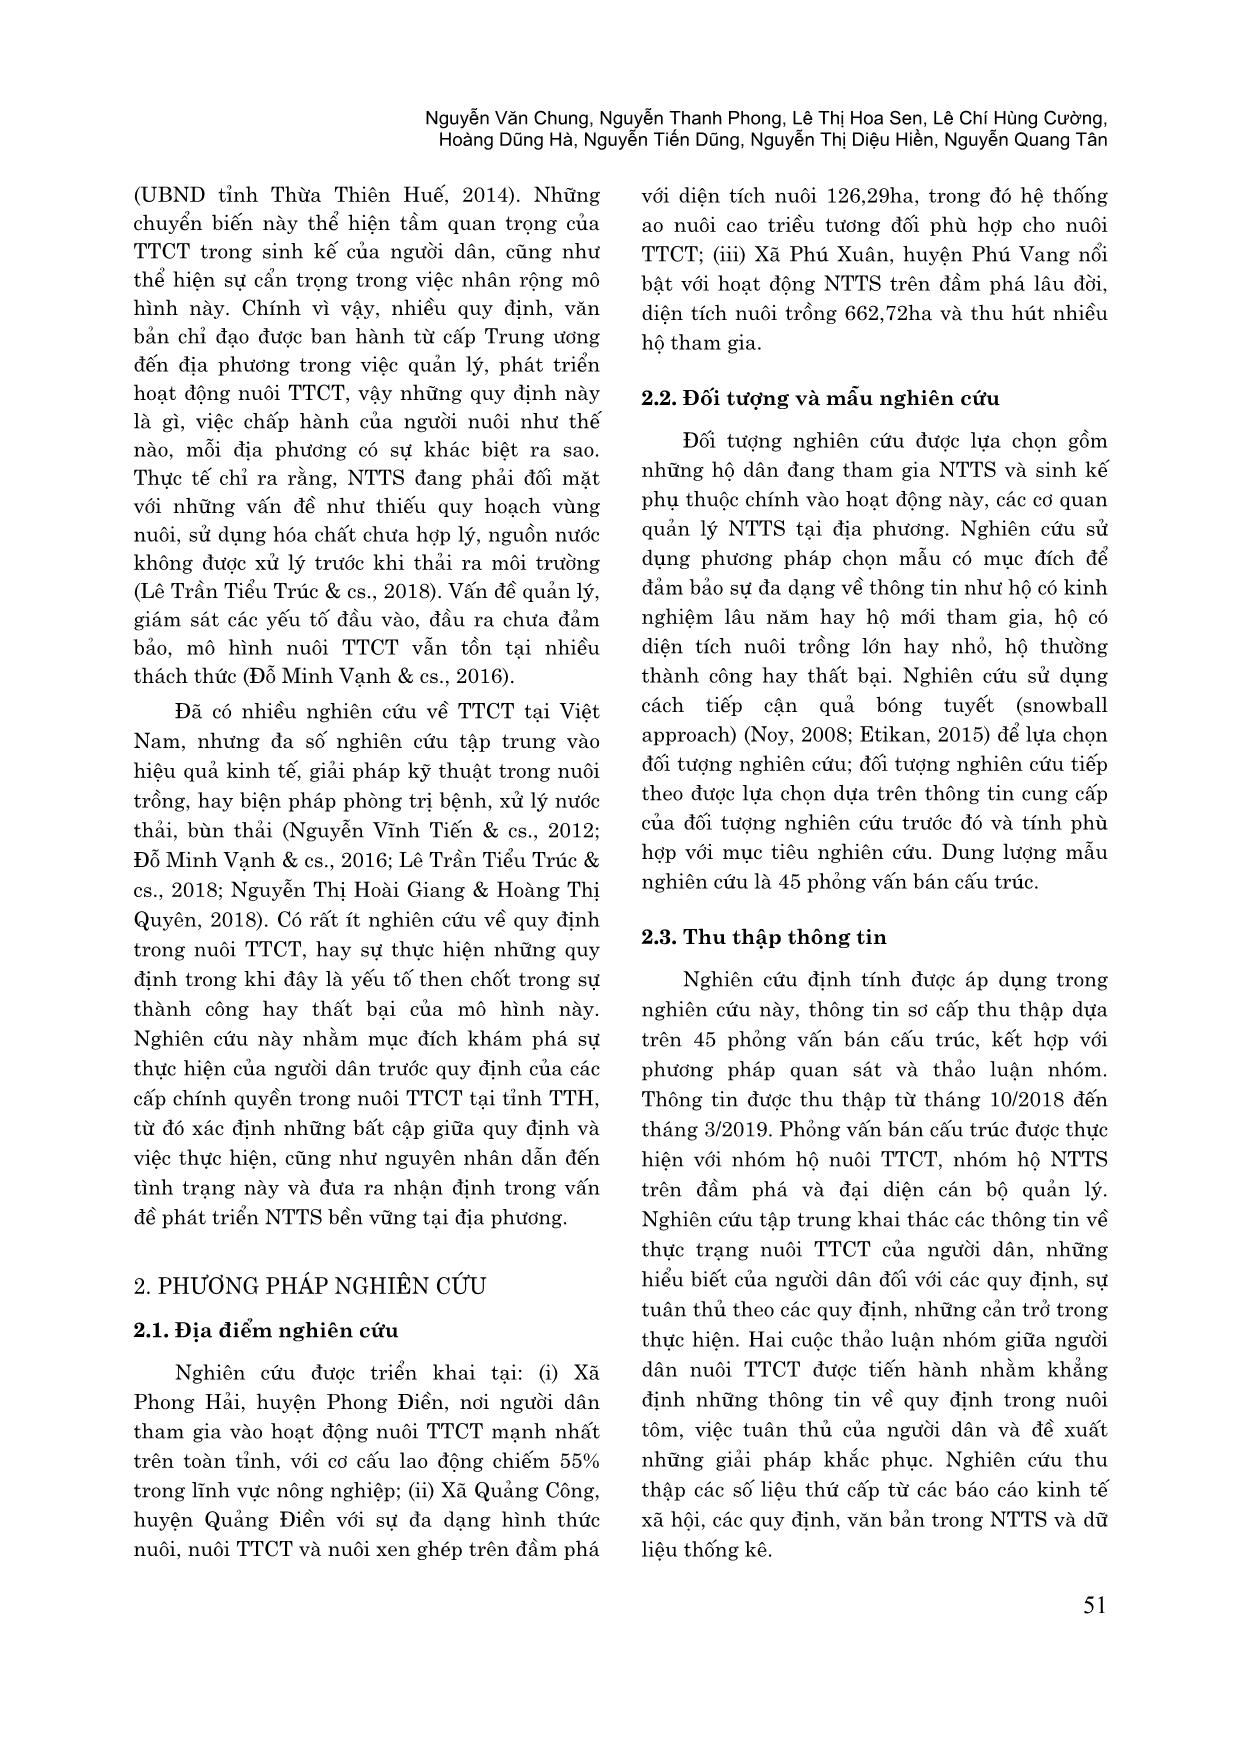 Khoảng cách giữa quy định và thực hiện trong nuôi tôm thẻ chân trắng tại Thừa Thiên Huế trang 2